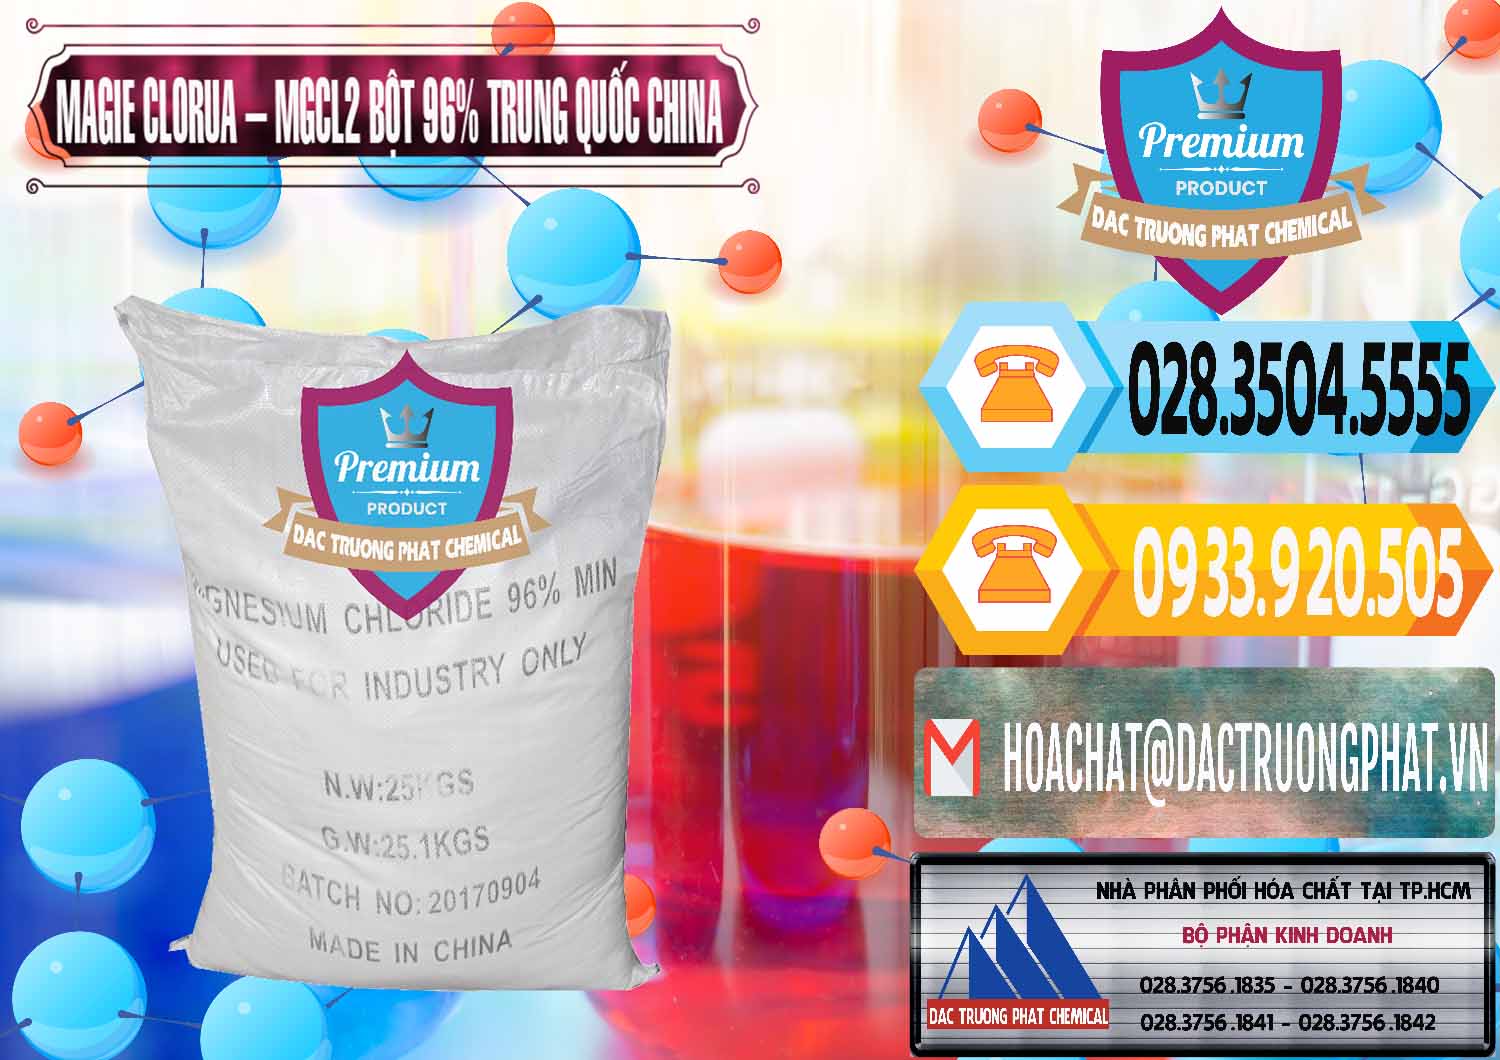 Phân phối và bán Magie Clorua – MGCL2 96% Dạng Bột Bao Chữ Đen Trung Quốc China - 0205 - Đơn vị cung cấp ( nhập khẩu ) hóa chất tại TP.HCM - hoachattayrua.net